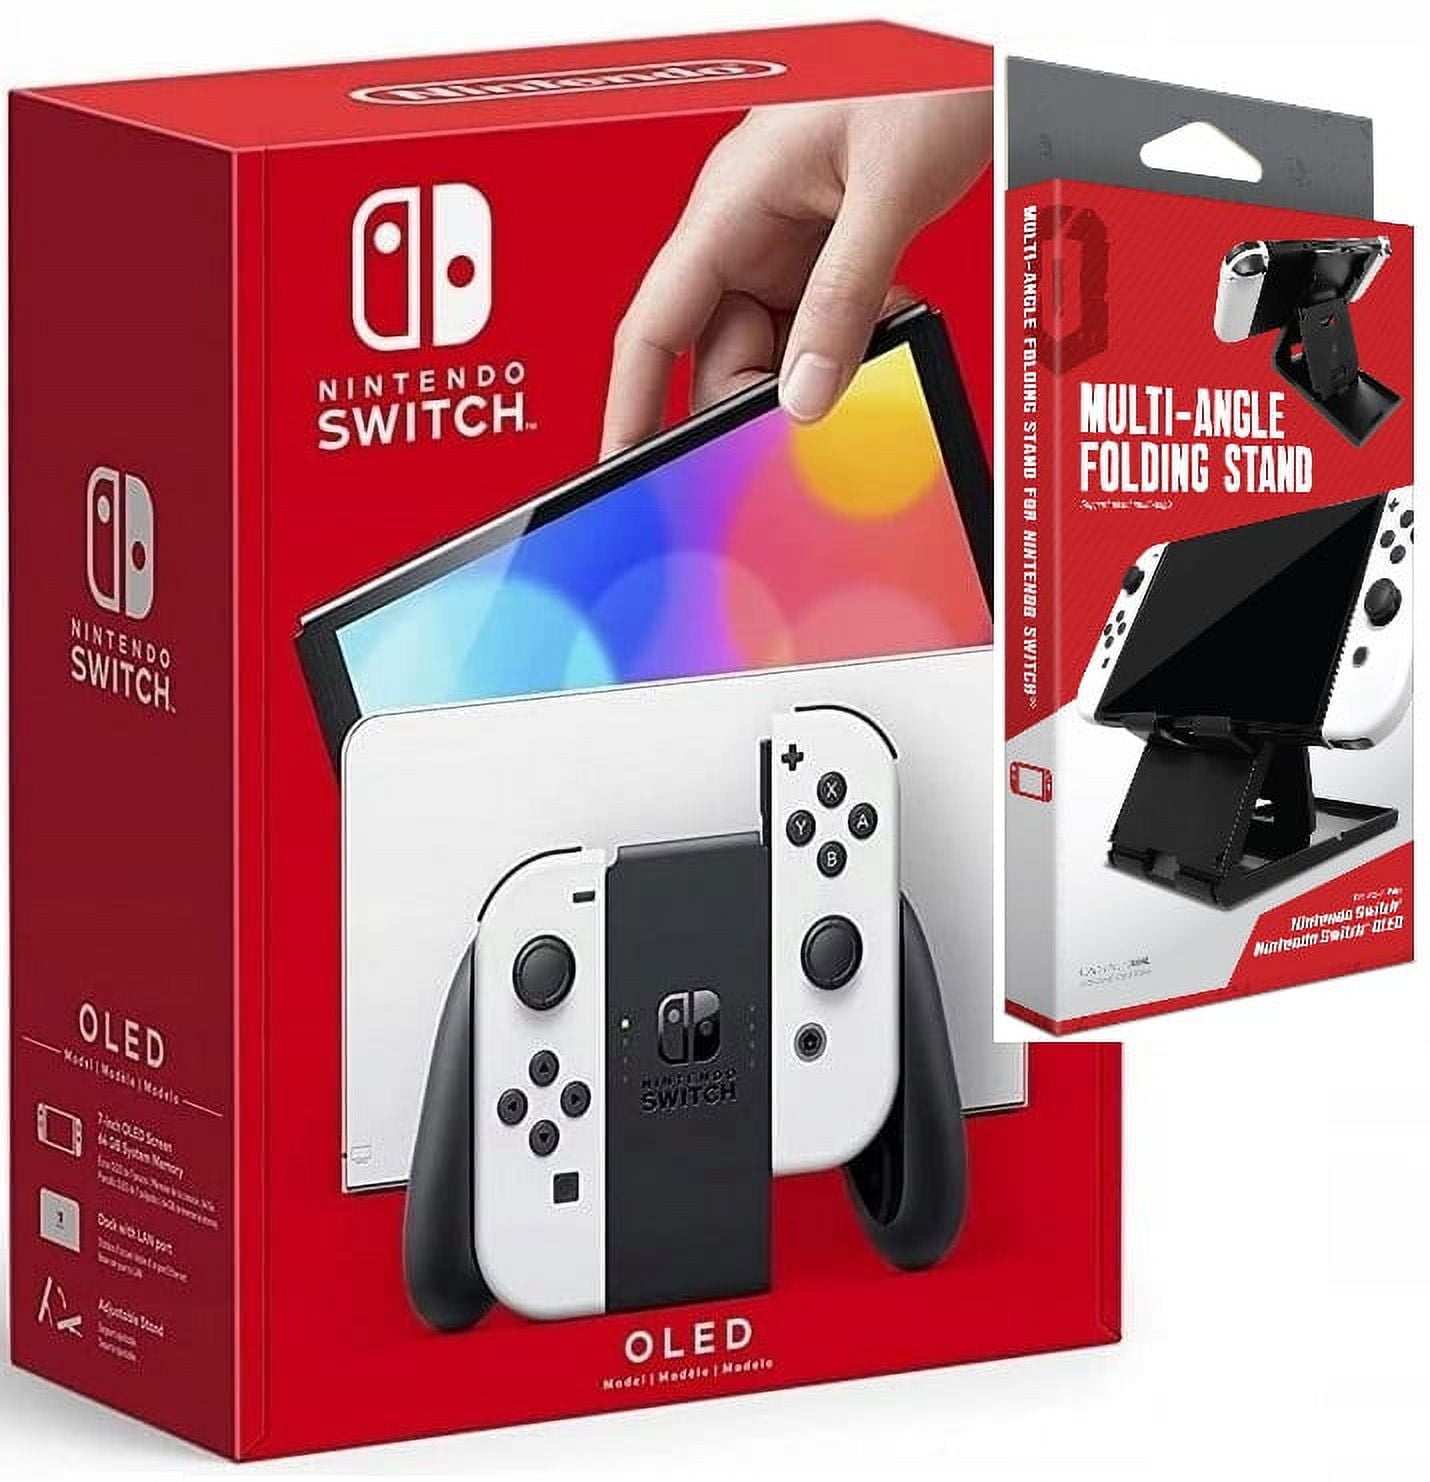 Nintendo Switch – OLED (Sw Oled) Model w/ White Joy-Con ...